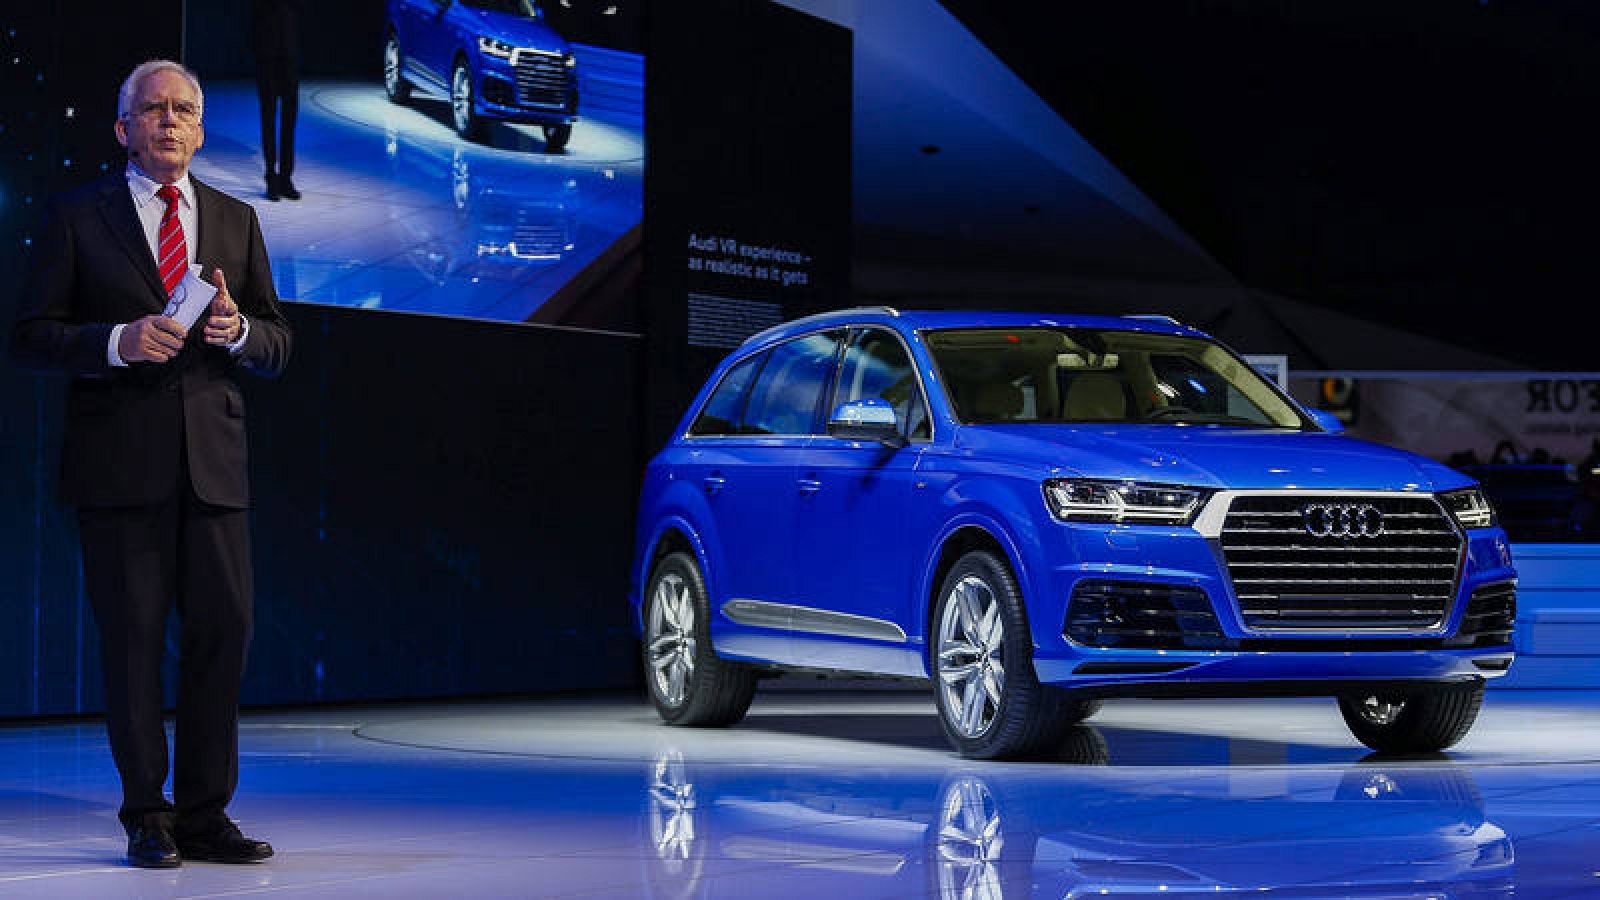 Presentación del Audi Q7 en el Salón del automóvil de Detroit de 2015 